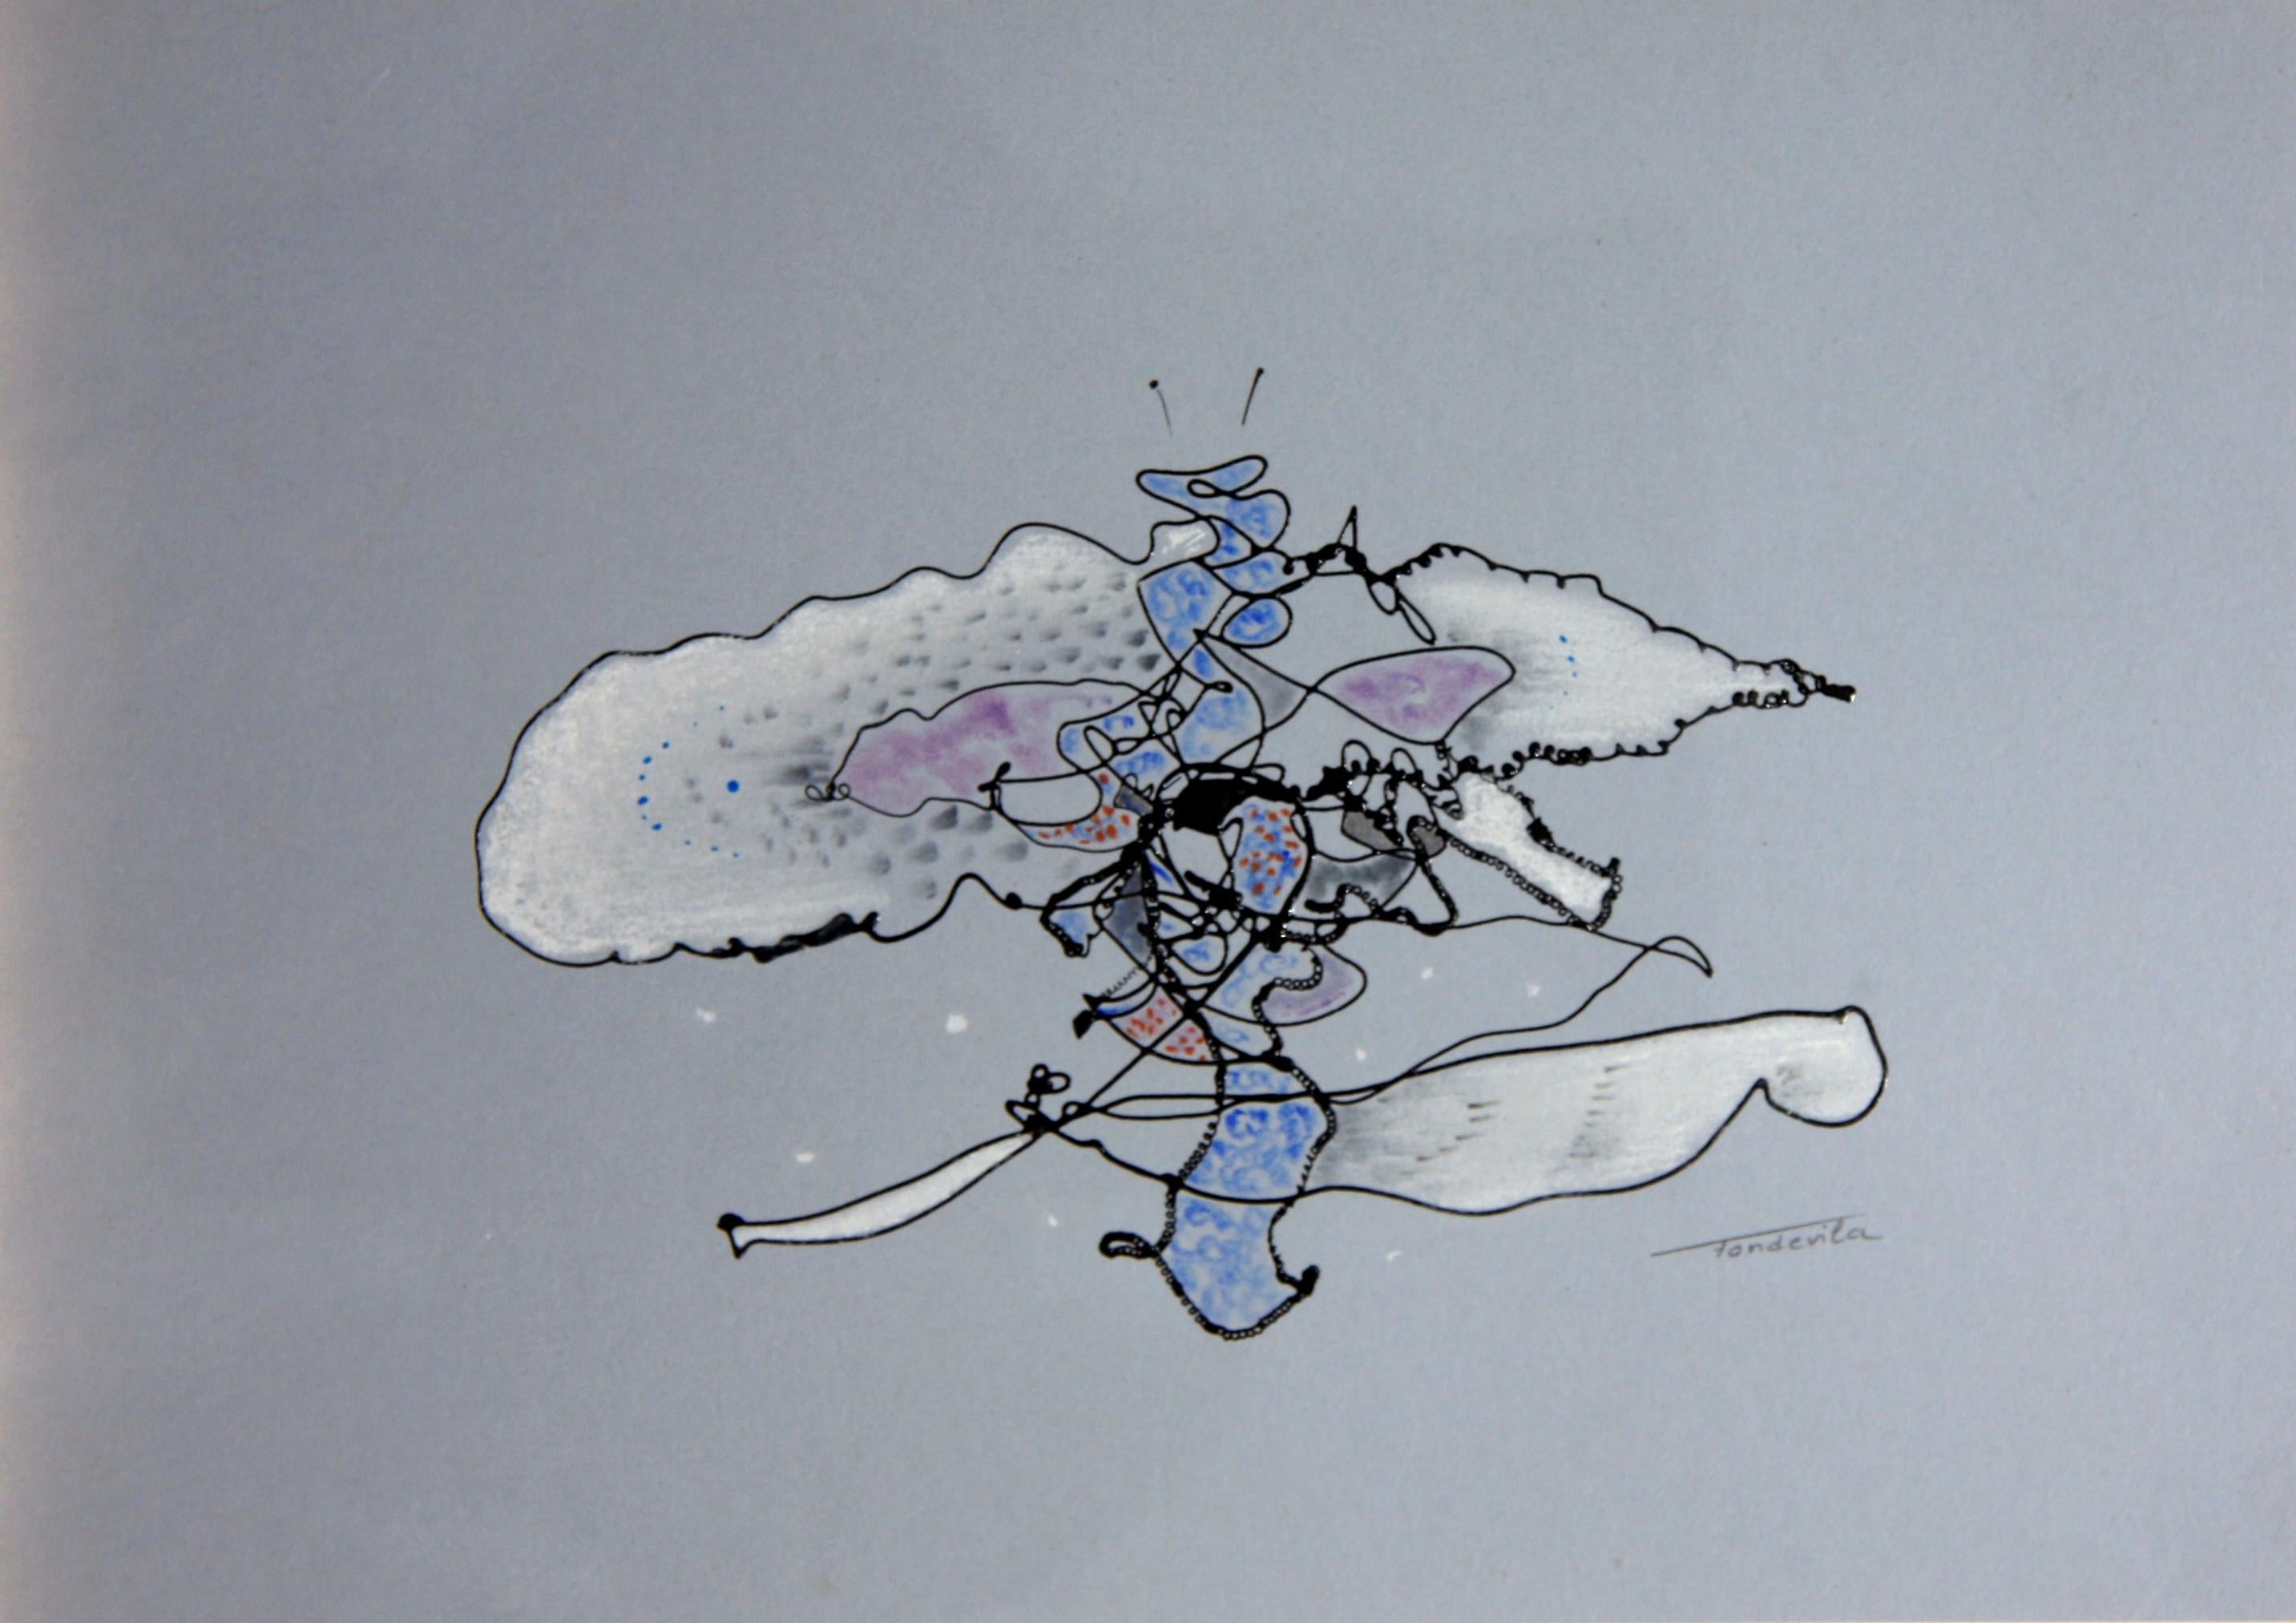 José Antonio Fondevila Abstract Drawing - Non puido ser bolboreta